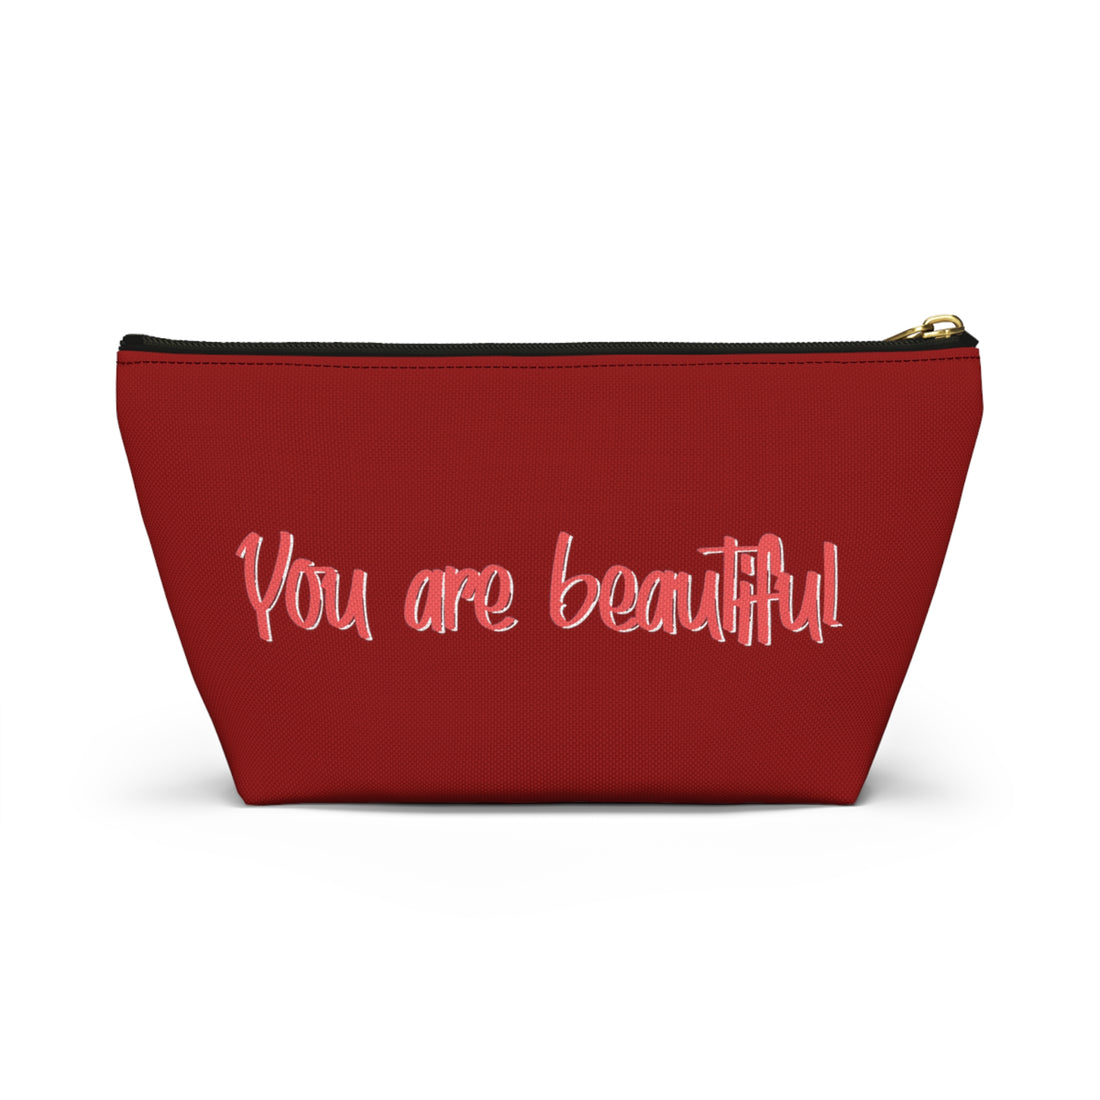 Red Rose Brunette Dewey Makeup Bag